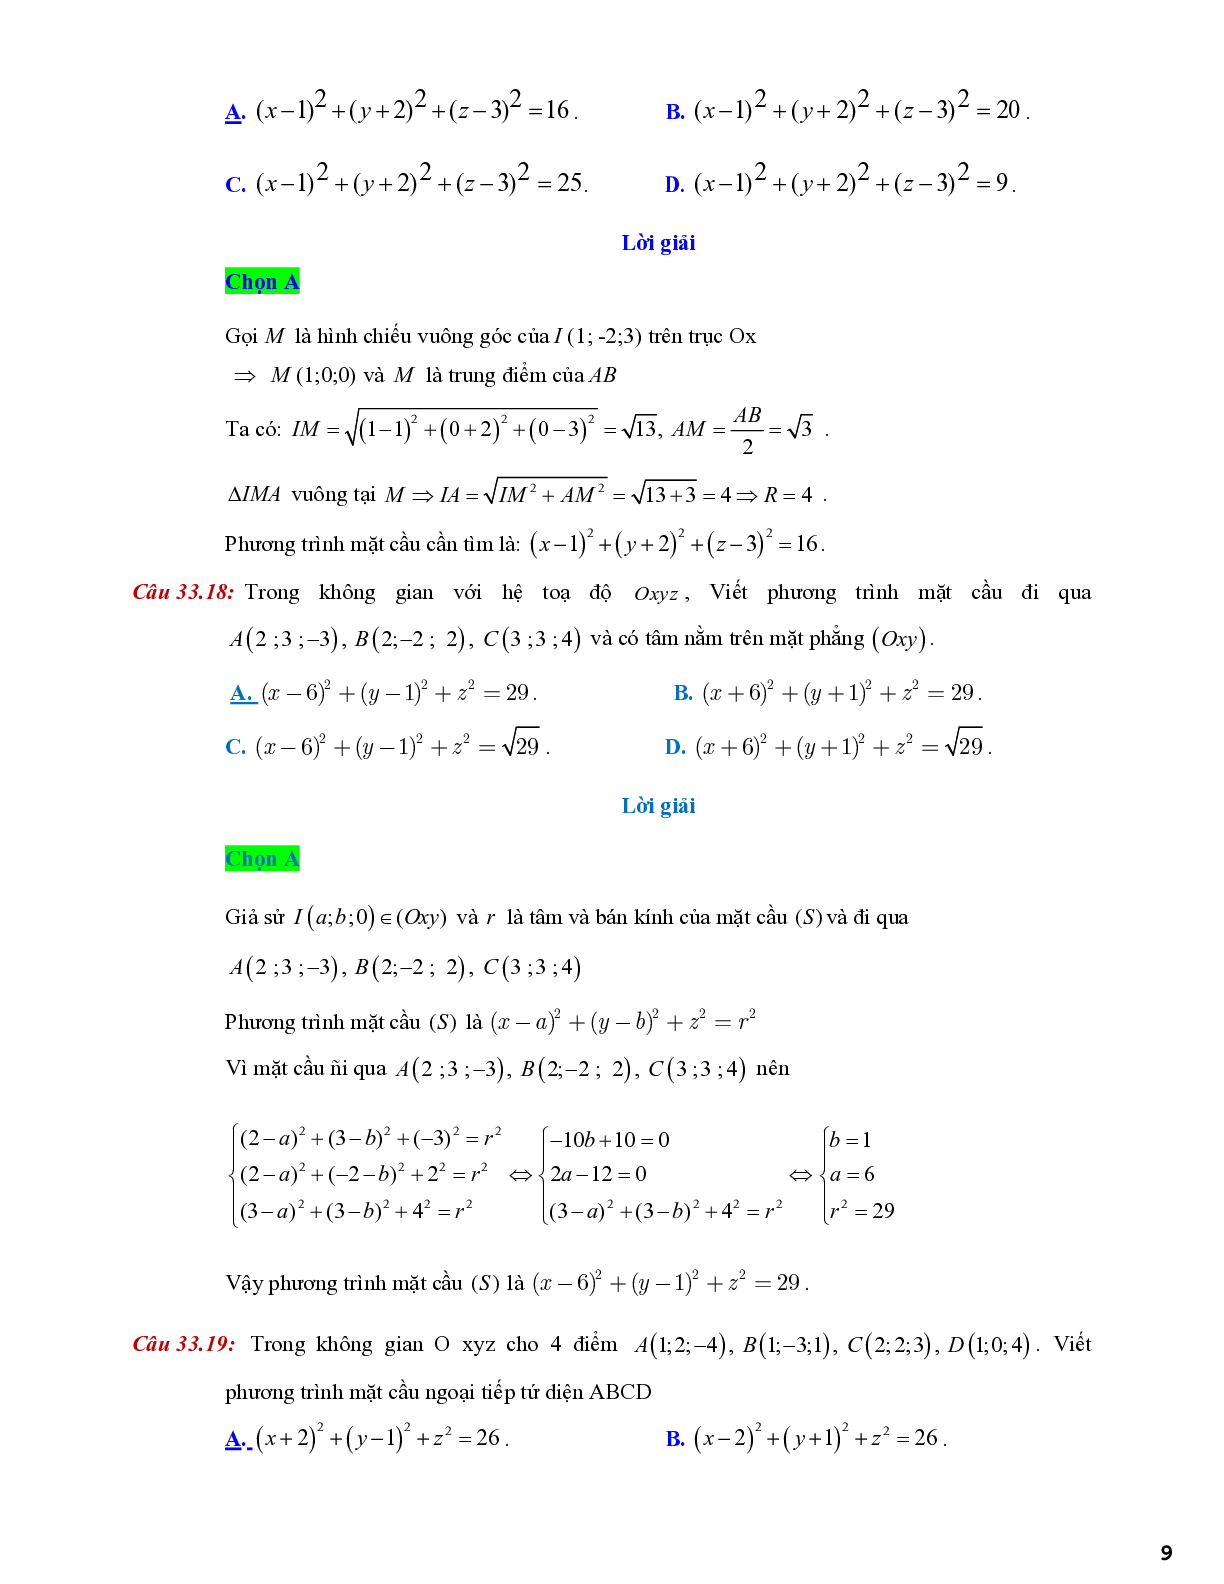 Lý thuyết và bài tập về viết phương trình mặt cầu - có đáp án chi tiết (trang 9)